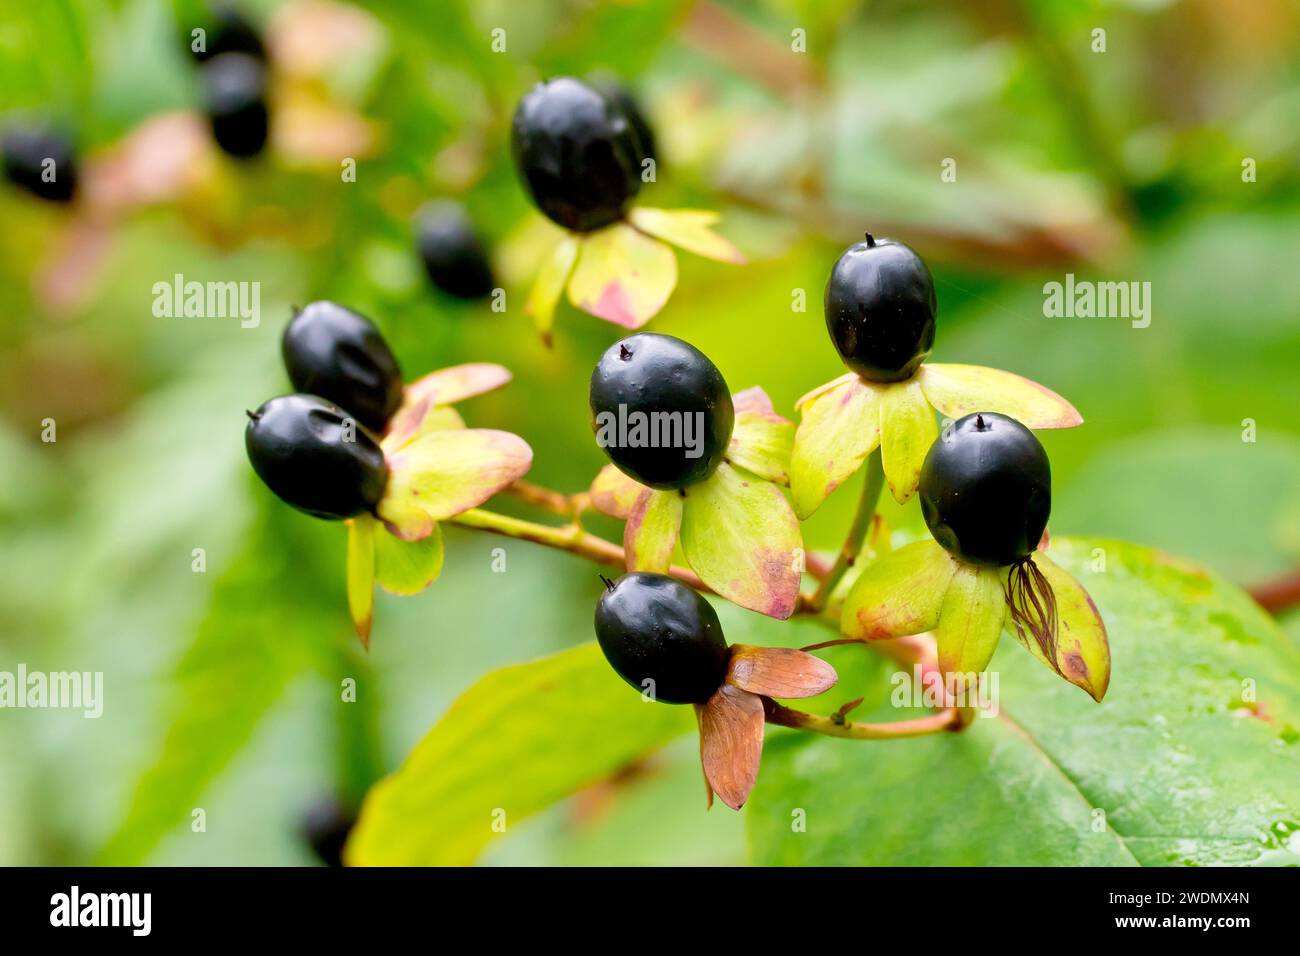 Tutsan (hypericum androsaemum), chiusura della mostra le singole bacche nere prodotte dai fiori dell'arbusto in autunno. Foto Stock